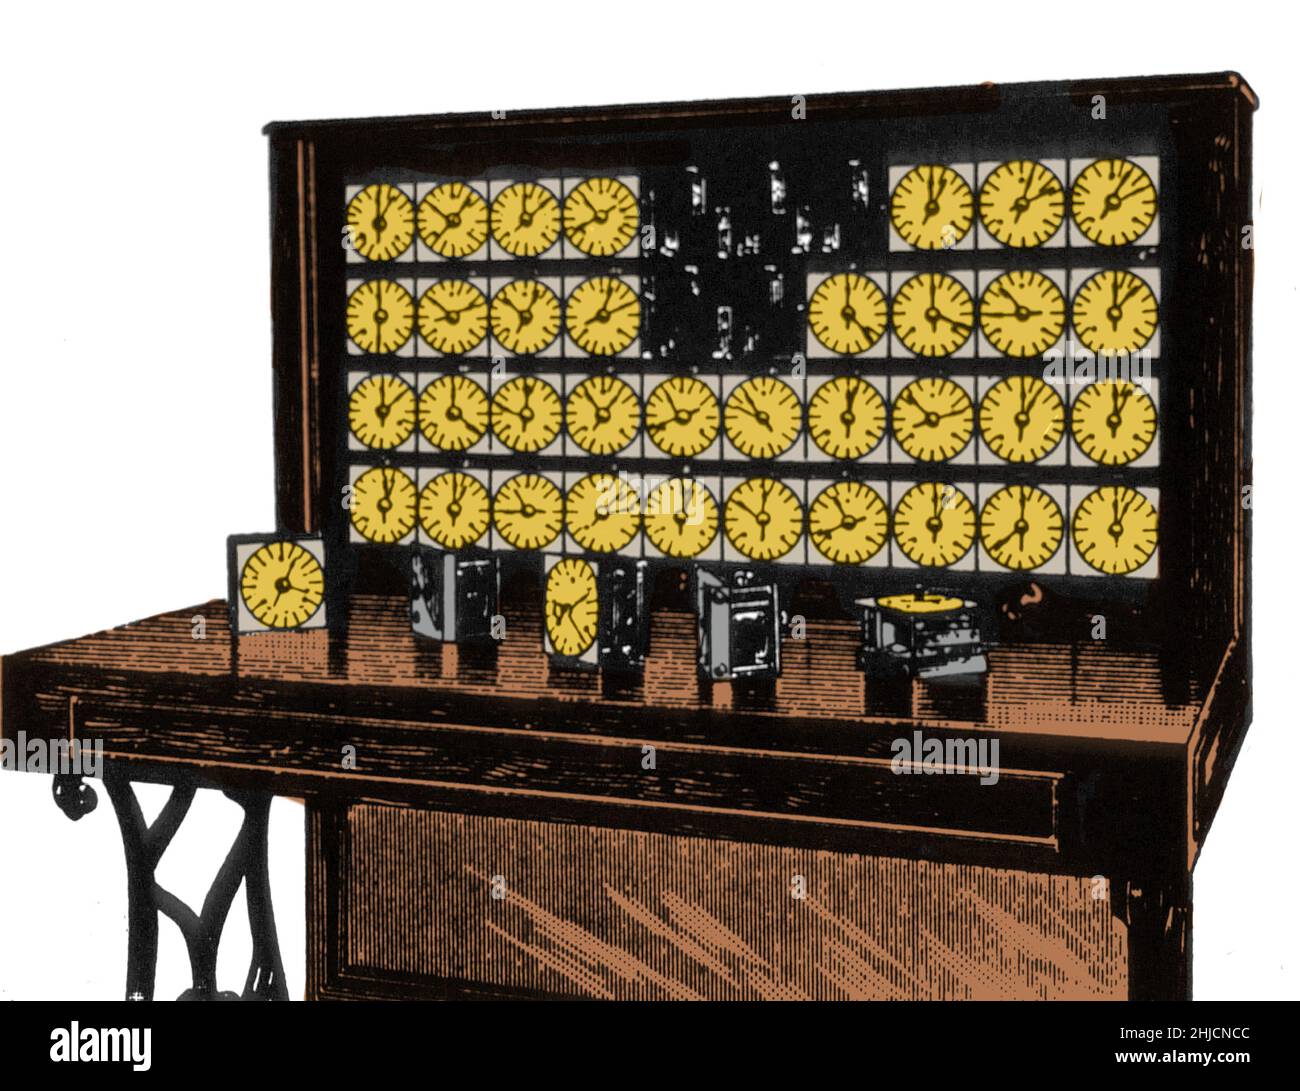 La macchina tabulatrice era un dispositivo elettrico progettato per aiutare a riassumere le informazioni. Inventata da Herman Hollerith, la macchina è stata sviluppata per aiutare a elaborare i dati per il censimento degli Stati Uniti del 1890. Le carte erano codificate per età, stato di residenza, sesso e altre informazioni; i chierchi hanno perforato le carte per inserire informazioni dai resi.il tabulatore aveva 40 contatori, ciascuno con un quadrante diviso in 100 divisioni, con due mani indicatrici; una che ha fatto un passo con ogni impulso di conteggio, l'altra che ha fatto avanzare una unità ogni volta che l'altra manopola ha fatto un giro completo. Questo arran Foto Stock